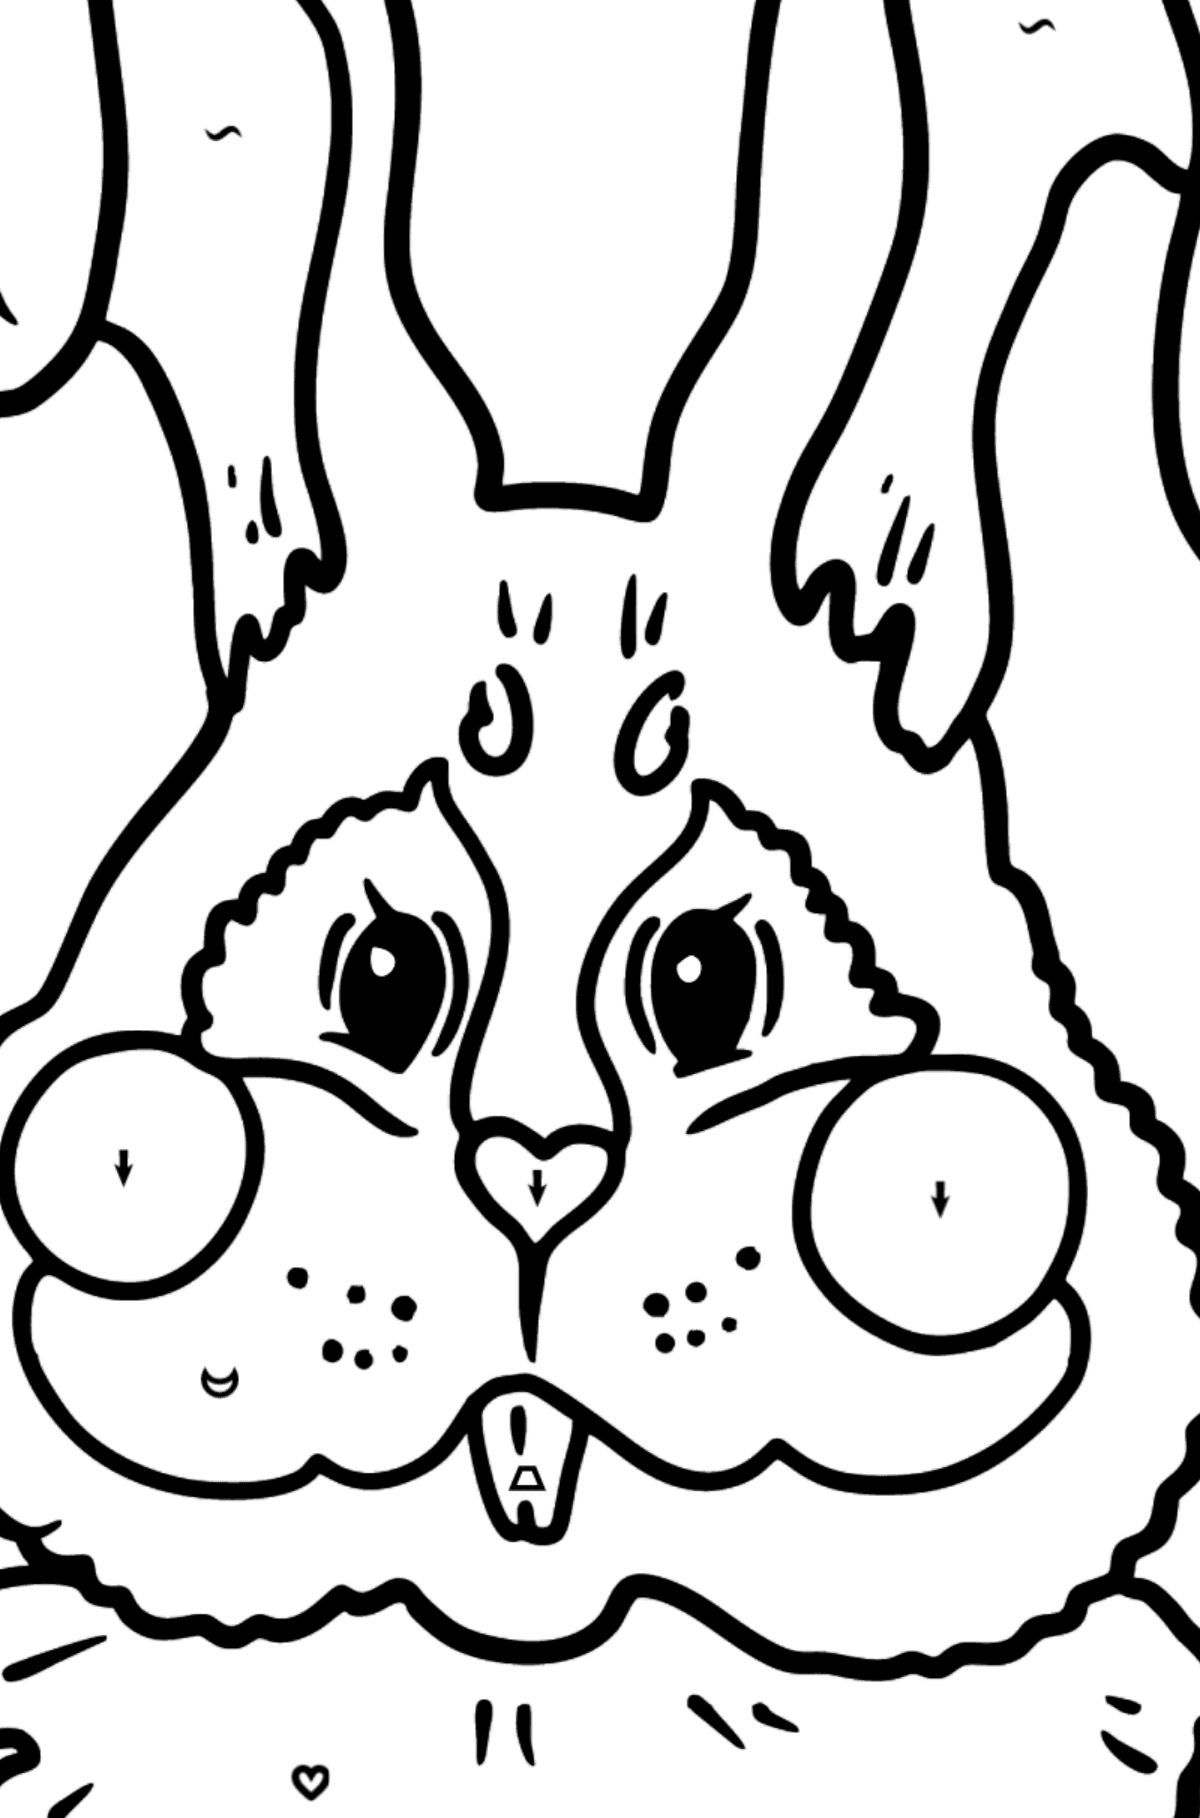 Coloriage - Visage de lapin - Coloriage par Symboles pour les Enfants